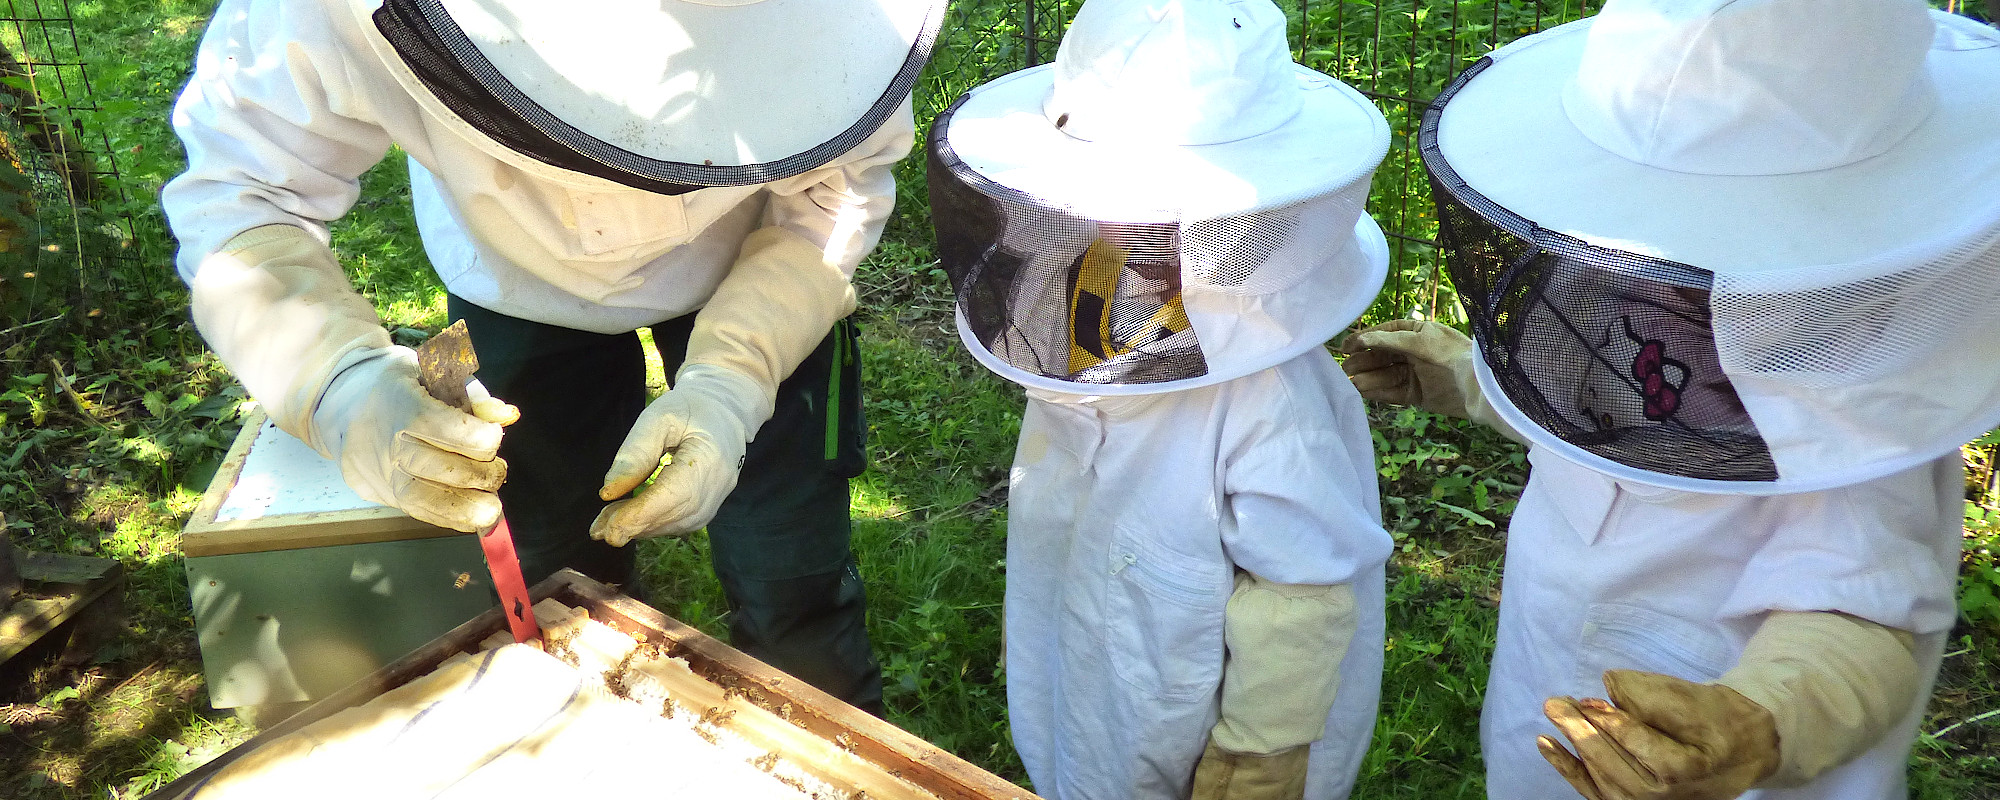 Imker Thorsten beim Kita-Bienenausflug